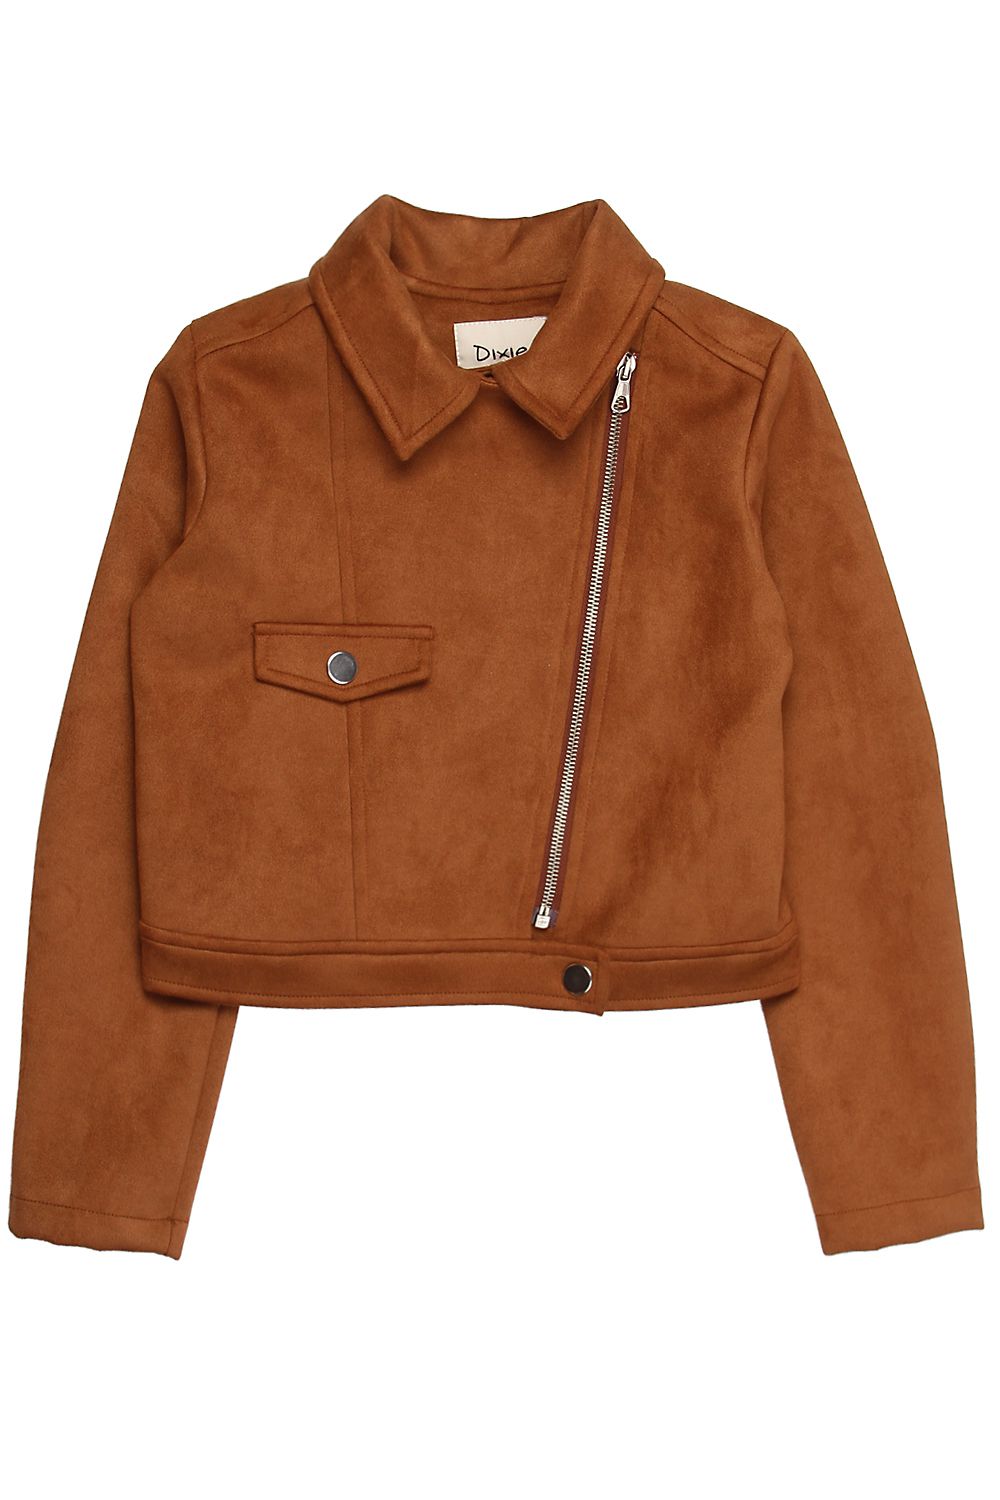 Куртка Dixie, размер 128, цвет коричневый - фото 1